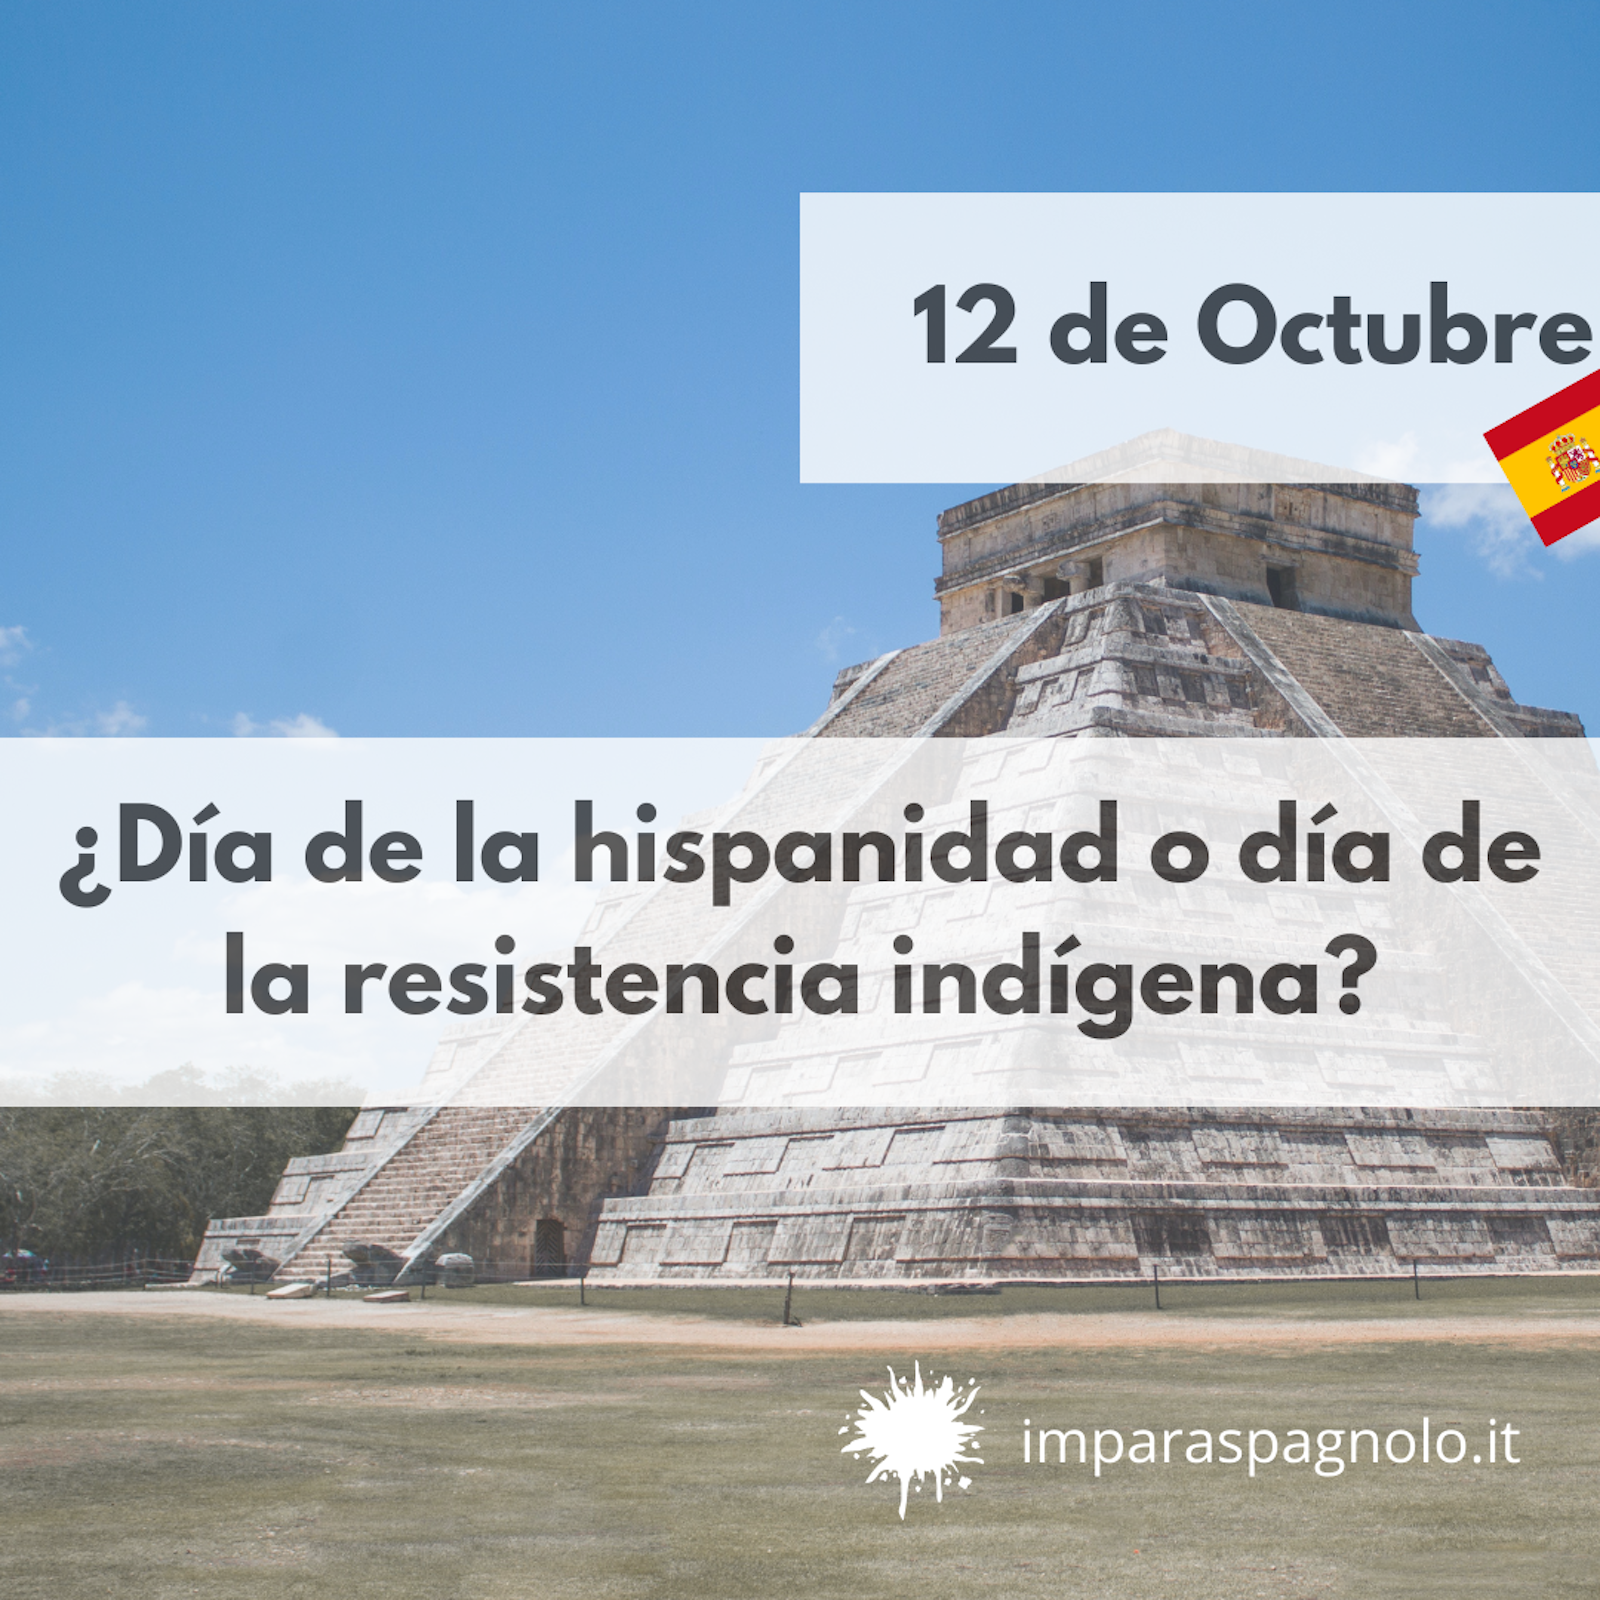 ¿Día de la hispanidad o día de la resistencia indígena?